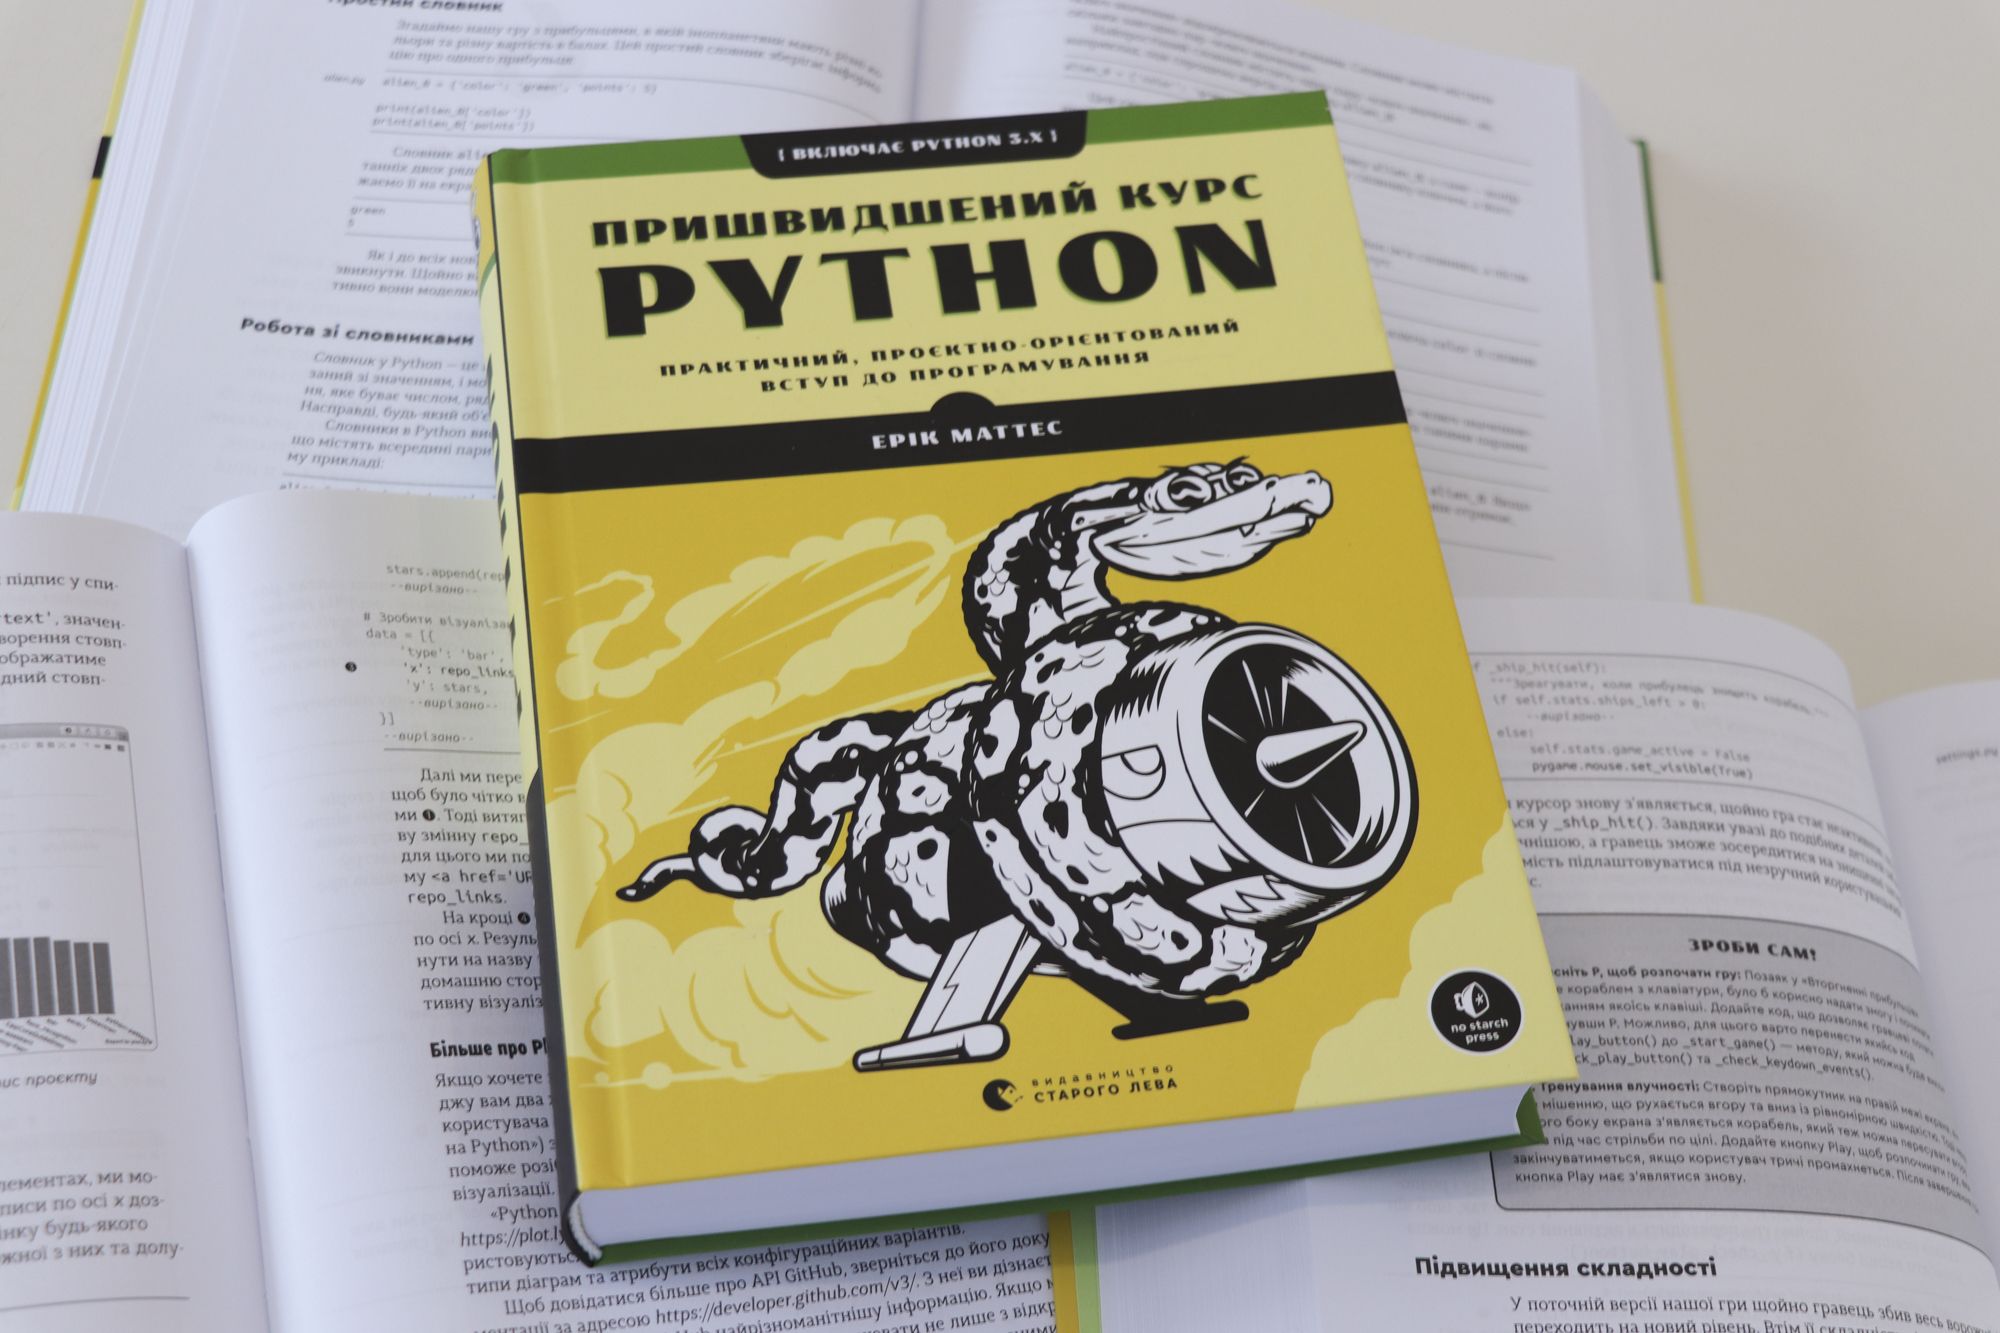 Пришвидшений курс Python